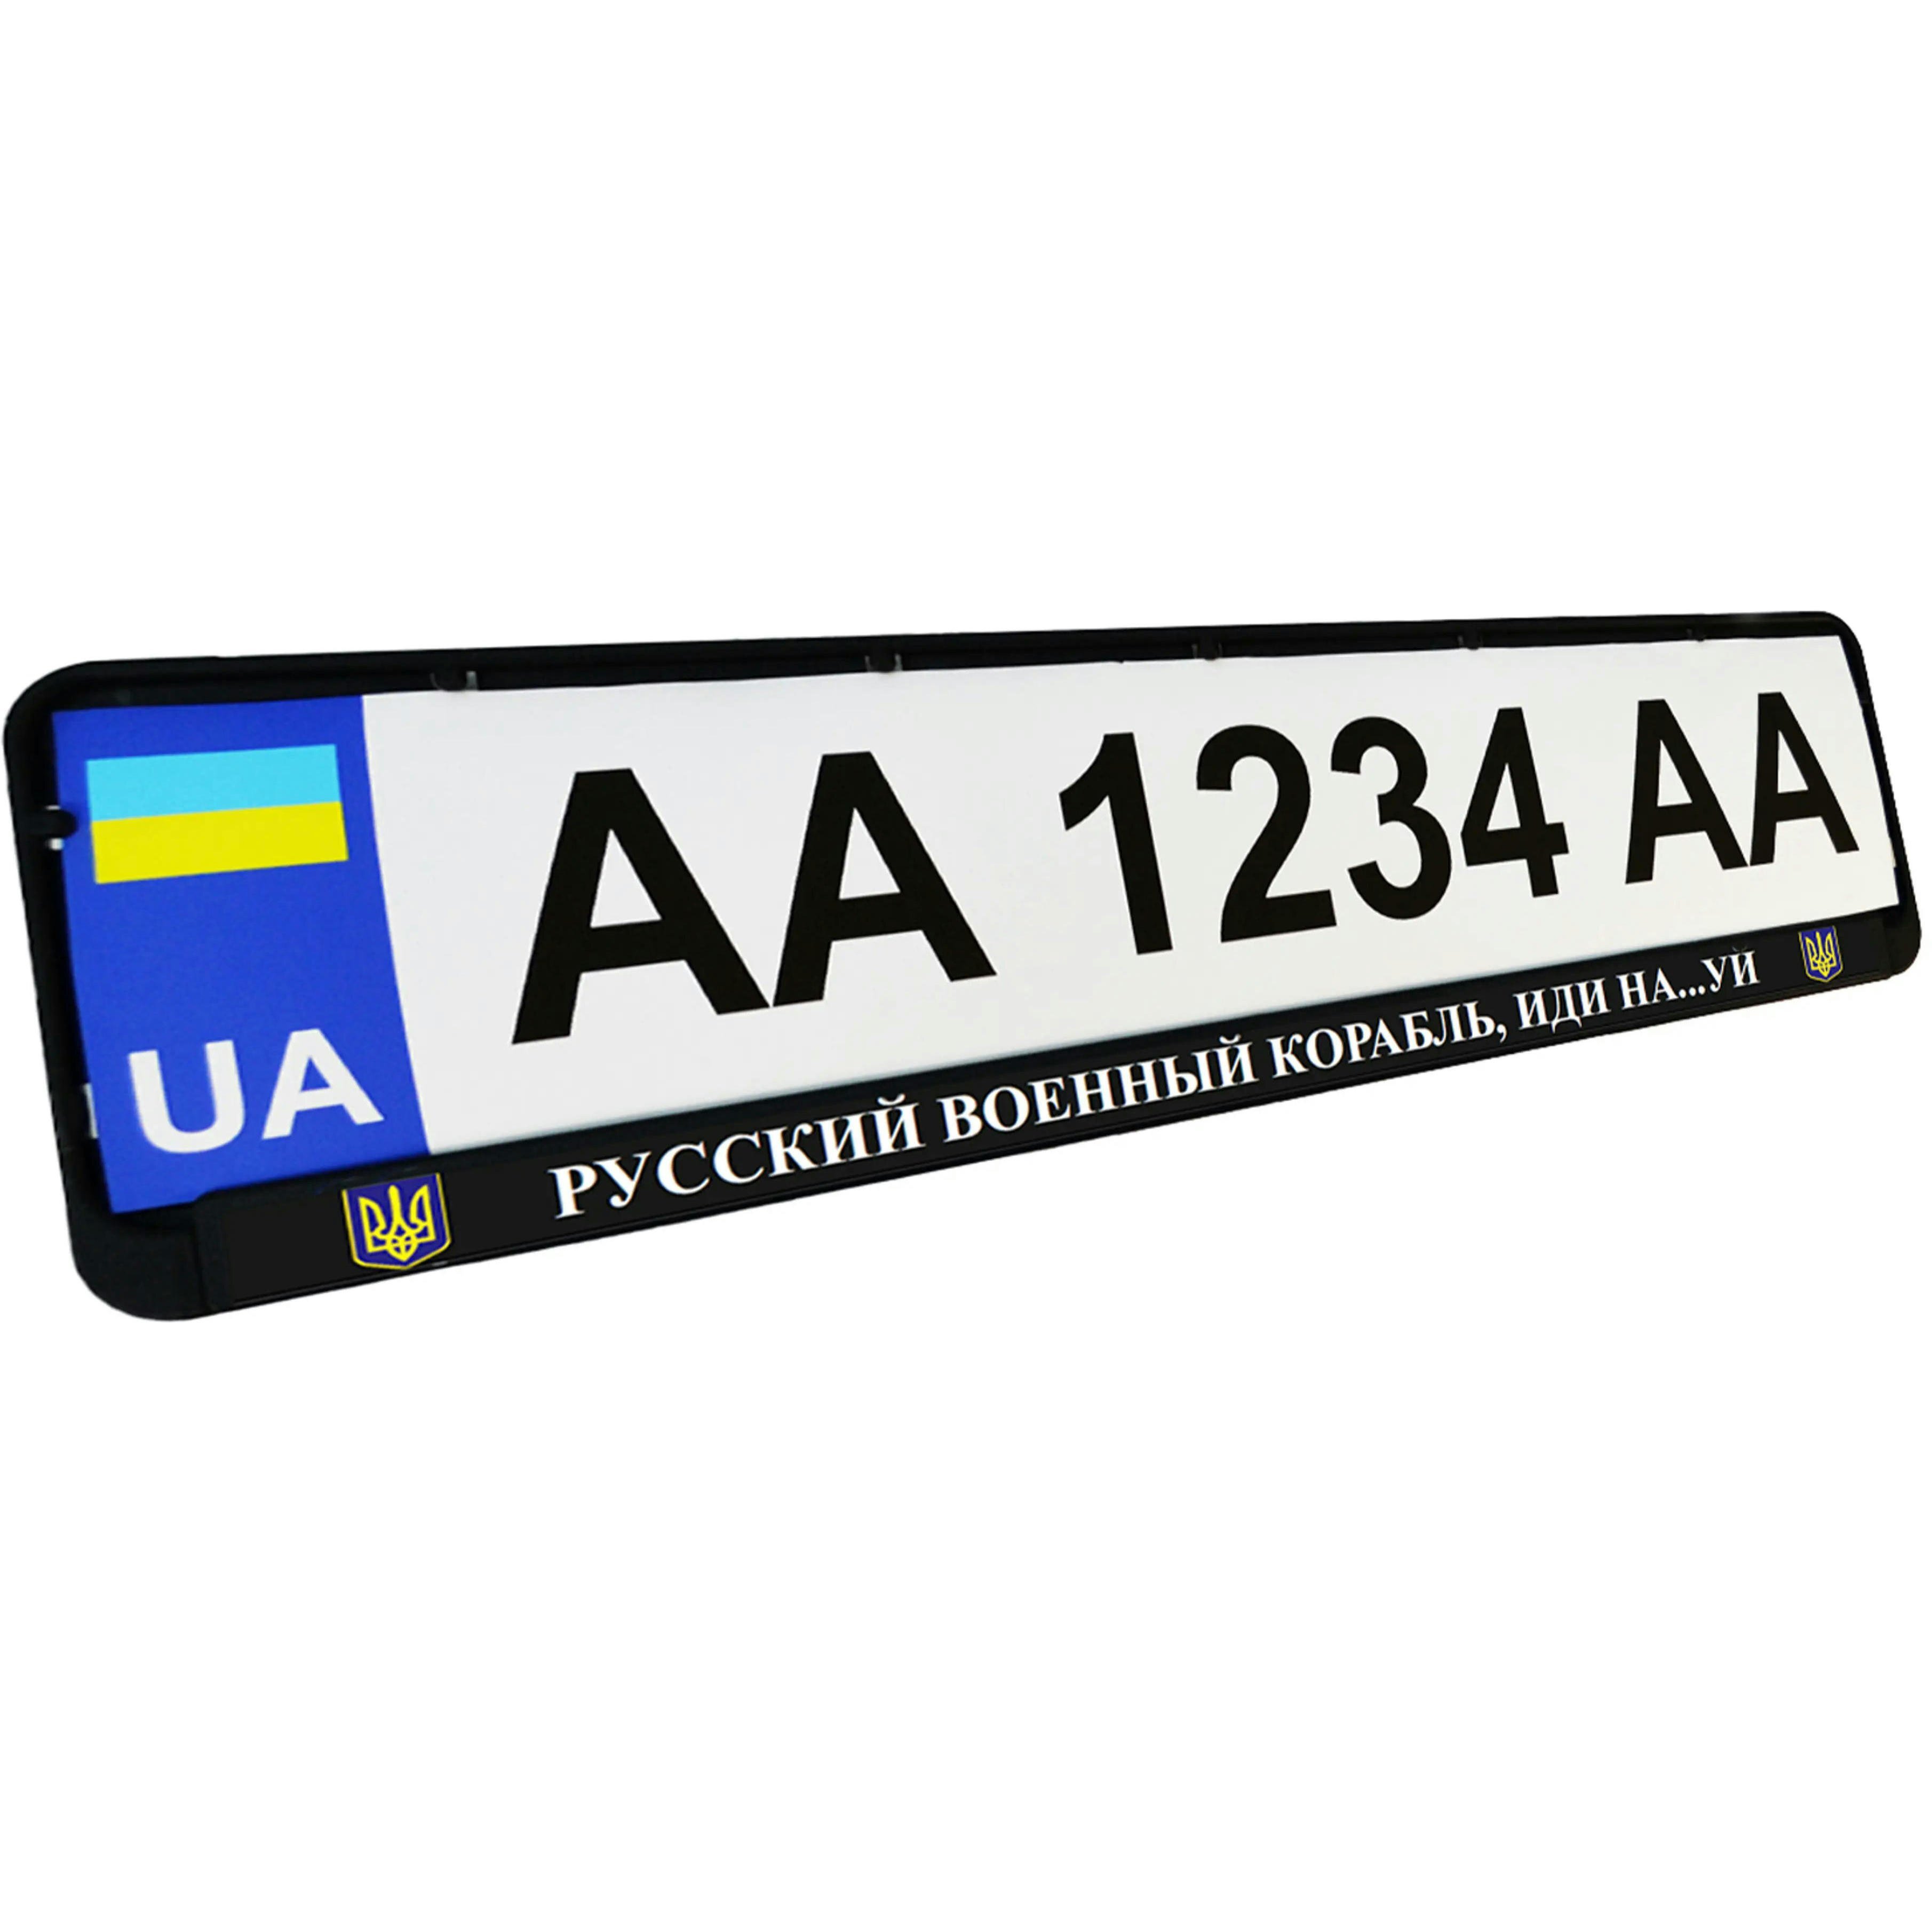 Рамка номерного знака Poputchik пластикова патріотична Російський військовий корабель, йди на…уй (24-266-IS)фото1